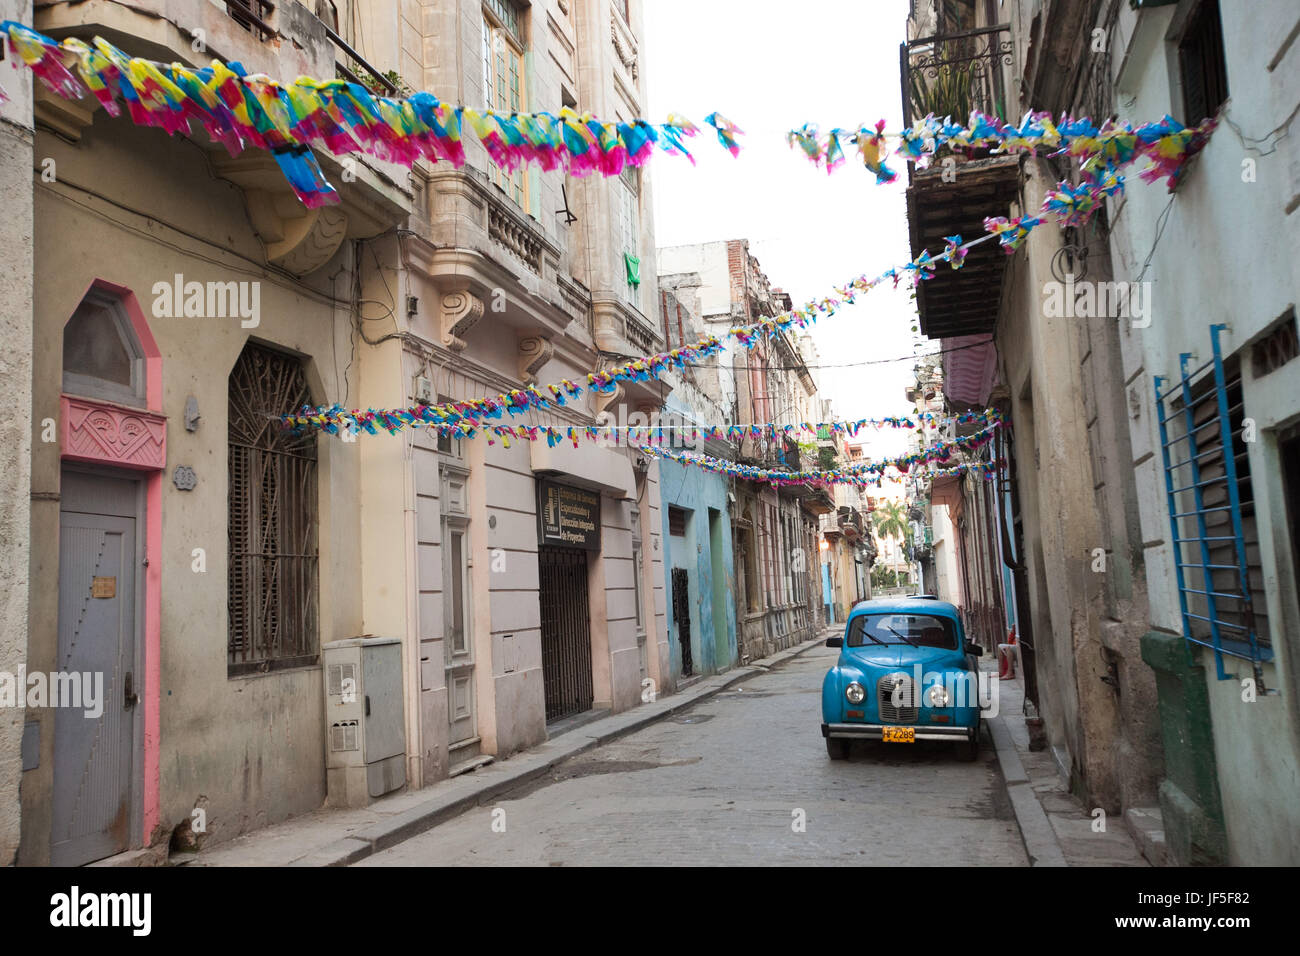 Al di sopra di una classica vettura americana, decorazioni colorate appendere da edifici su una stradina nel centro di Havana. Foto Stock